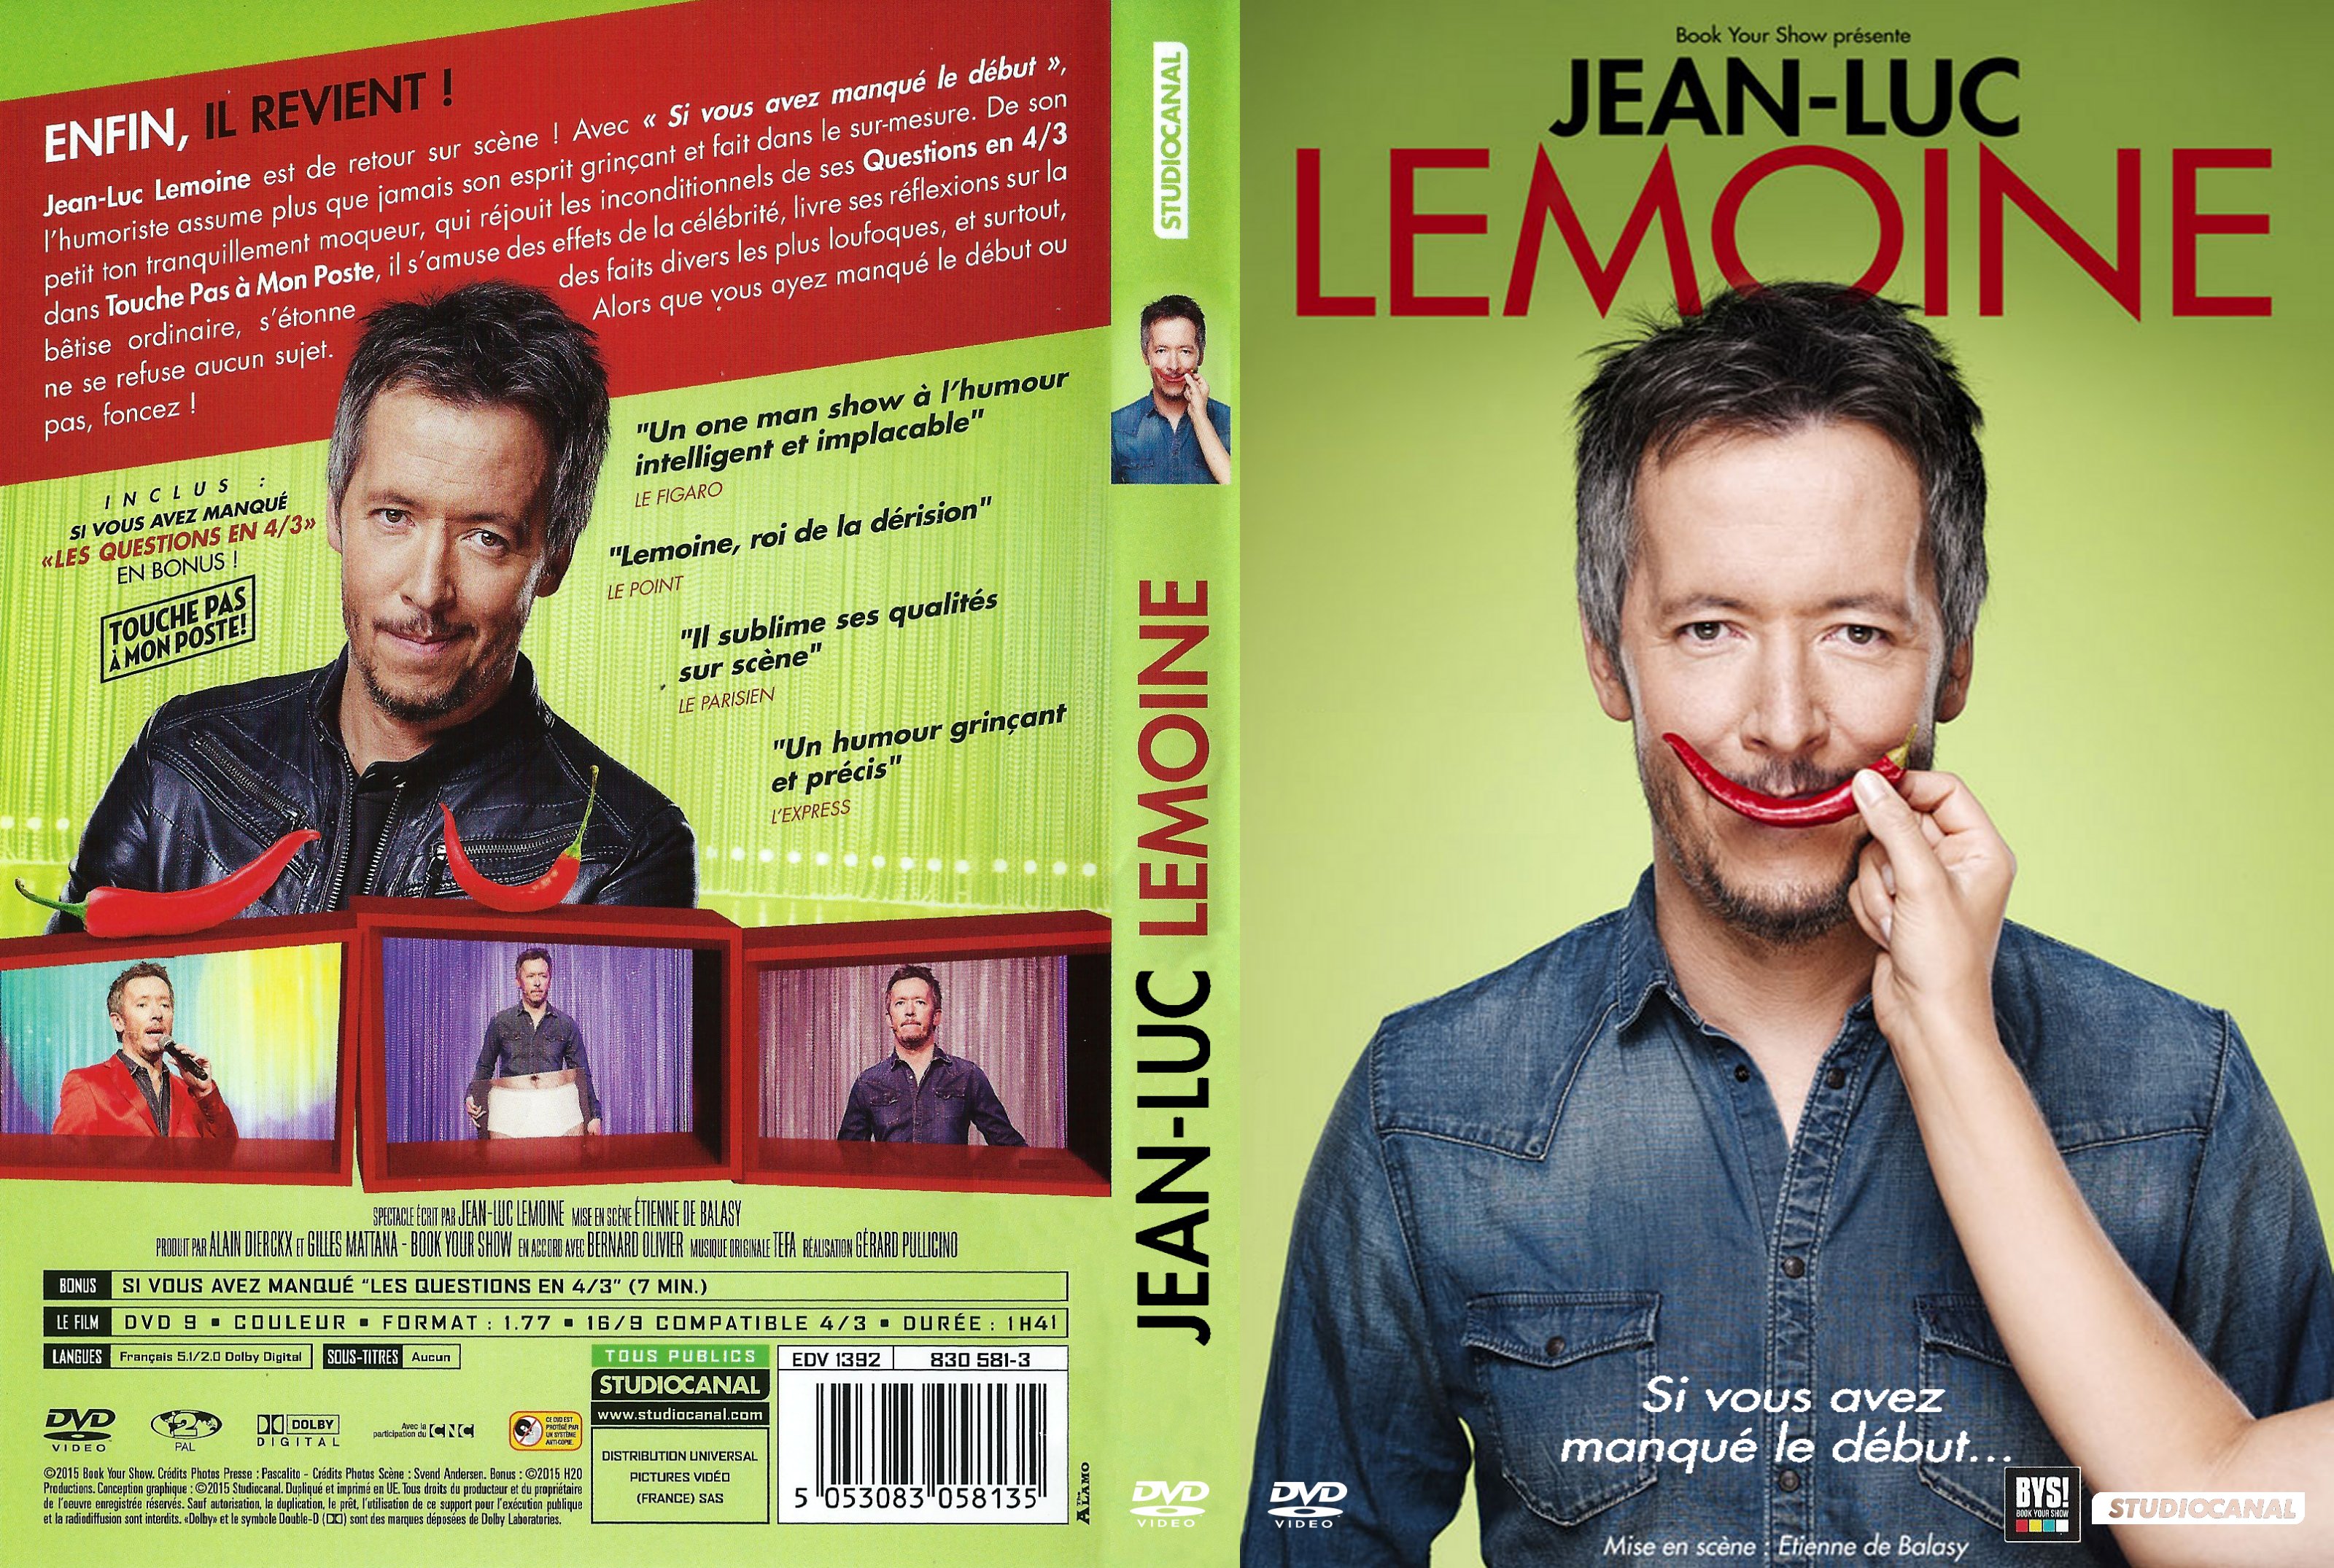 Jaquette DVD Jean-Luc Lemoine Si vous avez manque le debut